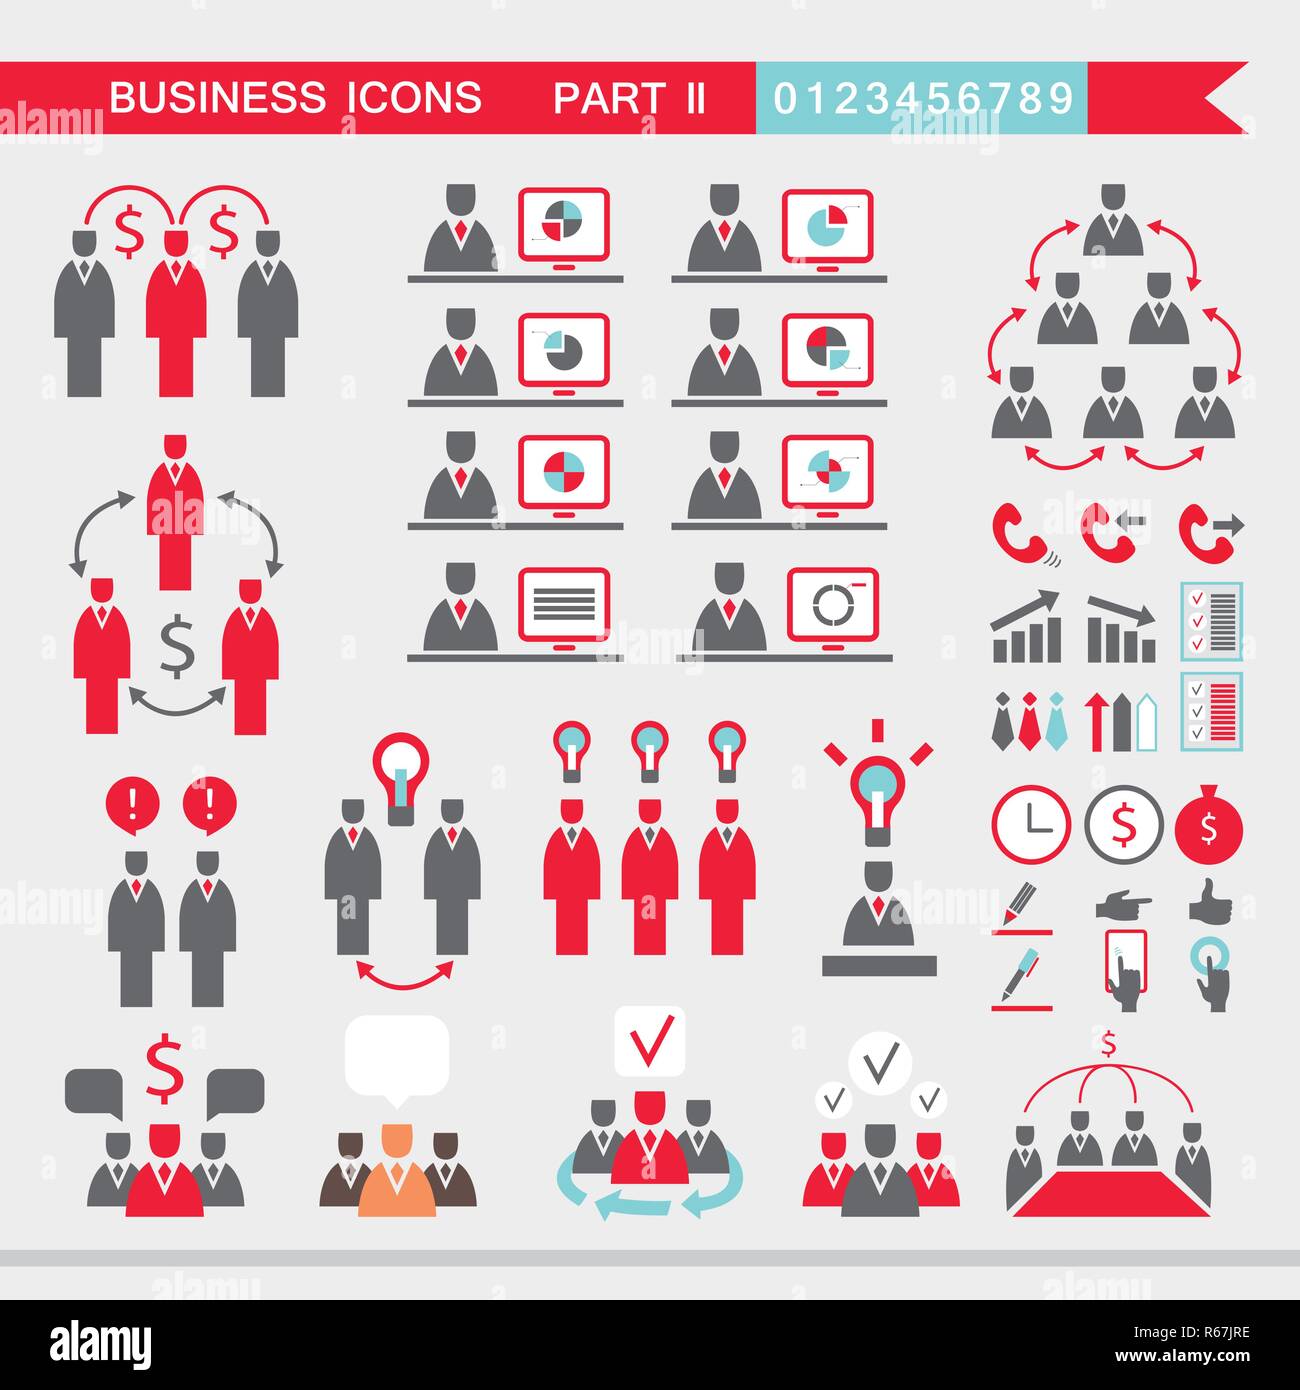 Satz von Web Icons für Business Finance Office Communication human resources Vector Illustration Stock Vektor